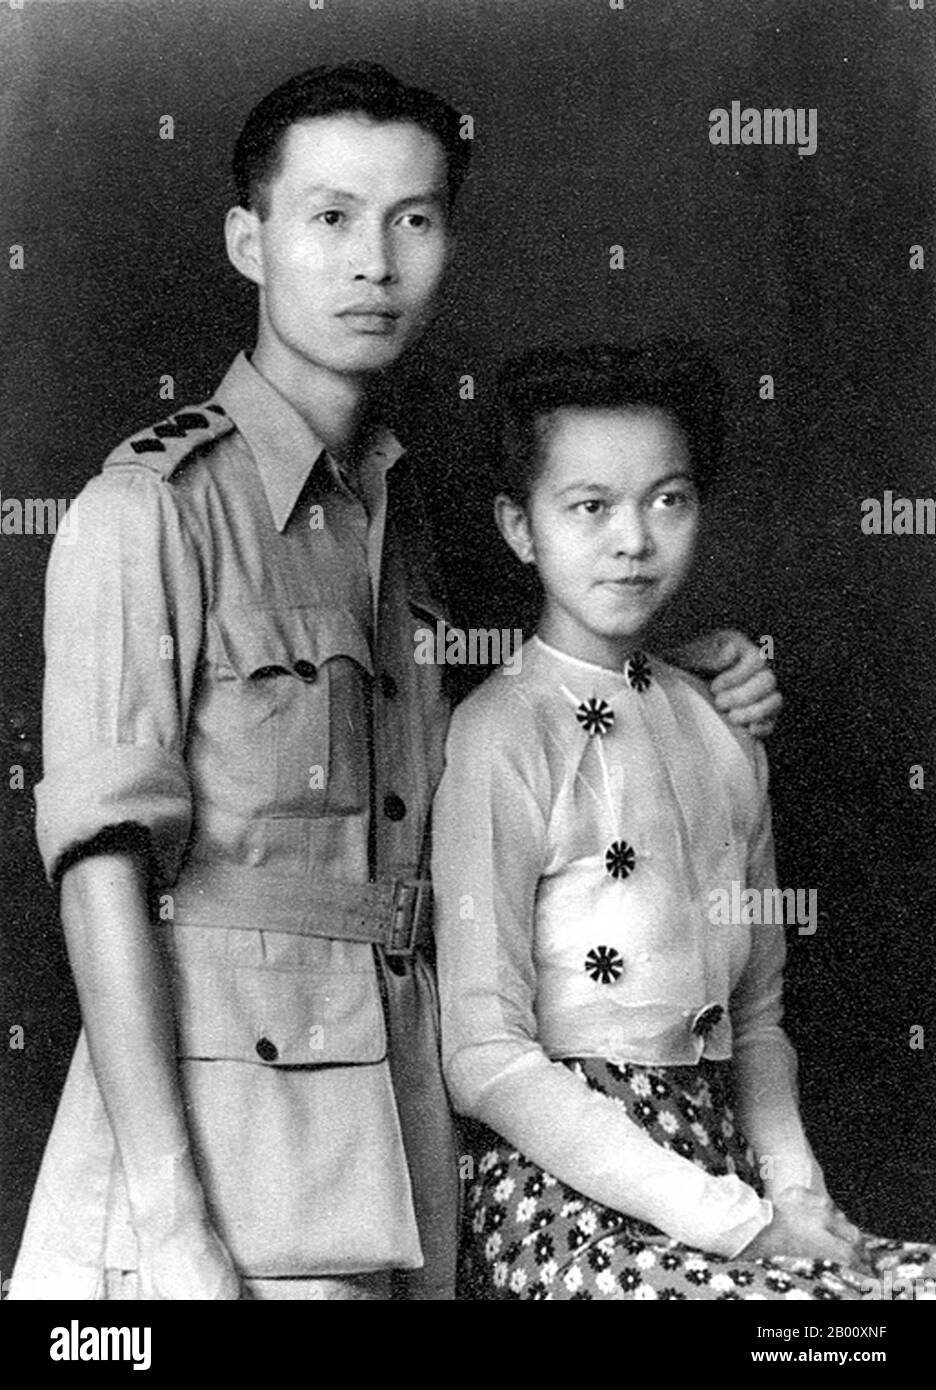 Birma/Myanmar: DAW Mi Mi Khaing (1916-1990) mit ihrem Mann Sao Saimong Mangrai Mi Mi Khaing (1916. – 15. März 1990) war eine burmesische Gelehrte und Schriftstellerin, die zahlreiche Bücher und Artikel über das Leben in Burma im 20. Jahrhundert verfasste. Sie ist als eine der ersten Frauen bekannt, die in englischer Sprache über burmesische Kultur und Traditionen schreiben. Mi Mi Mi Khaing, geboren aus der Mon-Abstammung, wuchs während der britischen Kolonialherrschaft in Burma auf und wurde an britischen Schulen ausgebildet. Sie heiratete Sao Saimong, einen bekannten Gelehrten und Mitglied der königlichen Familie von Kengtung im Staat Shan. Stockfoto